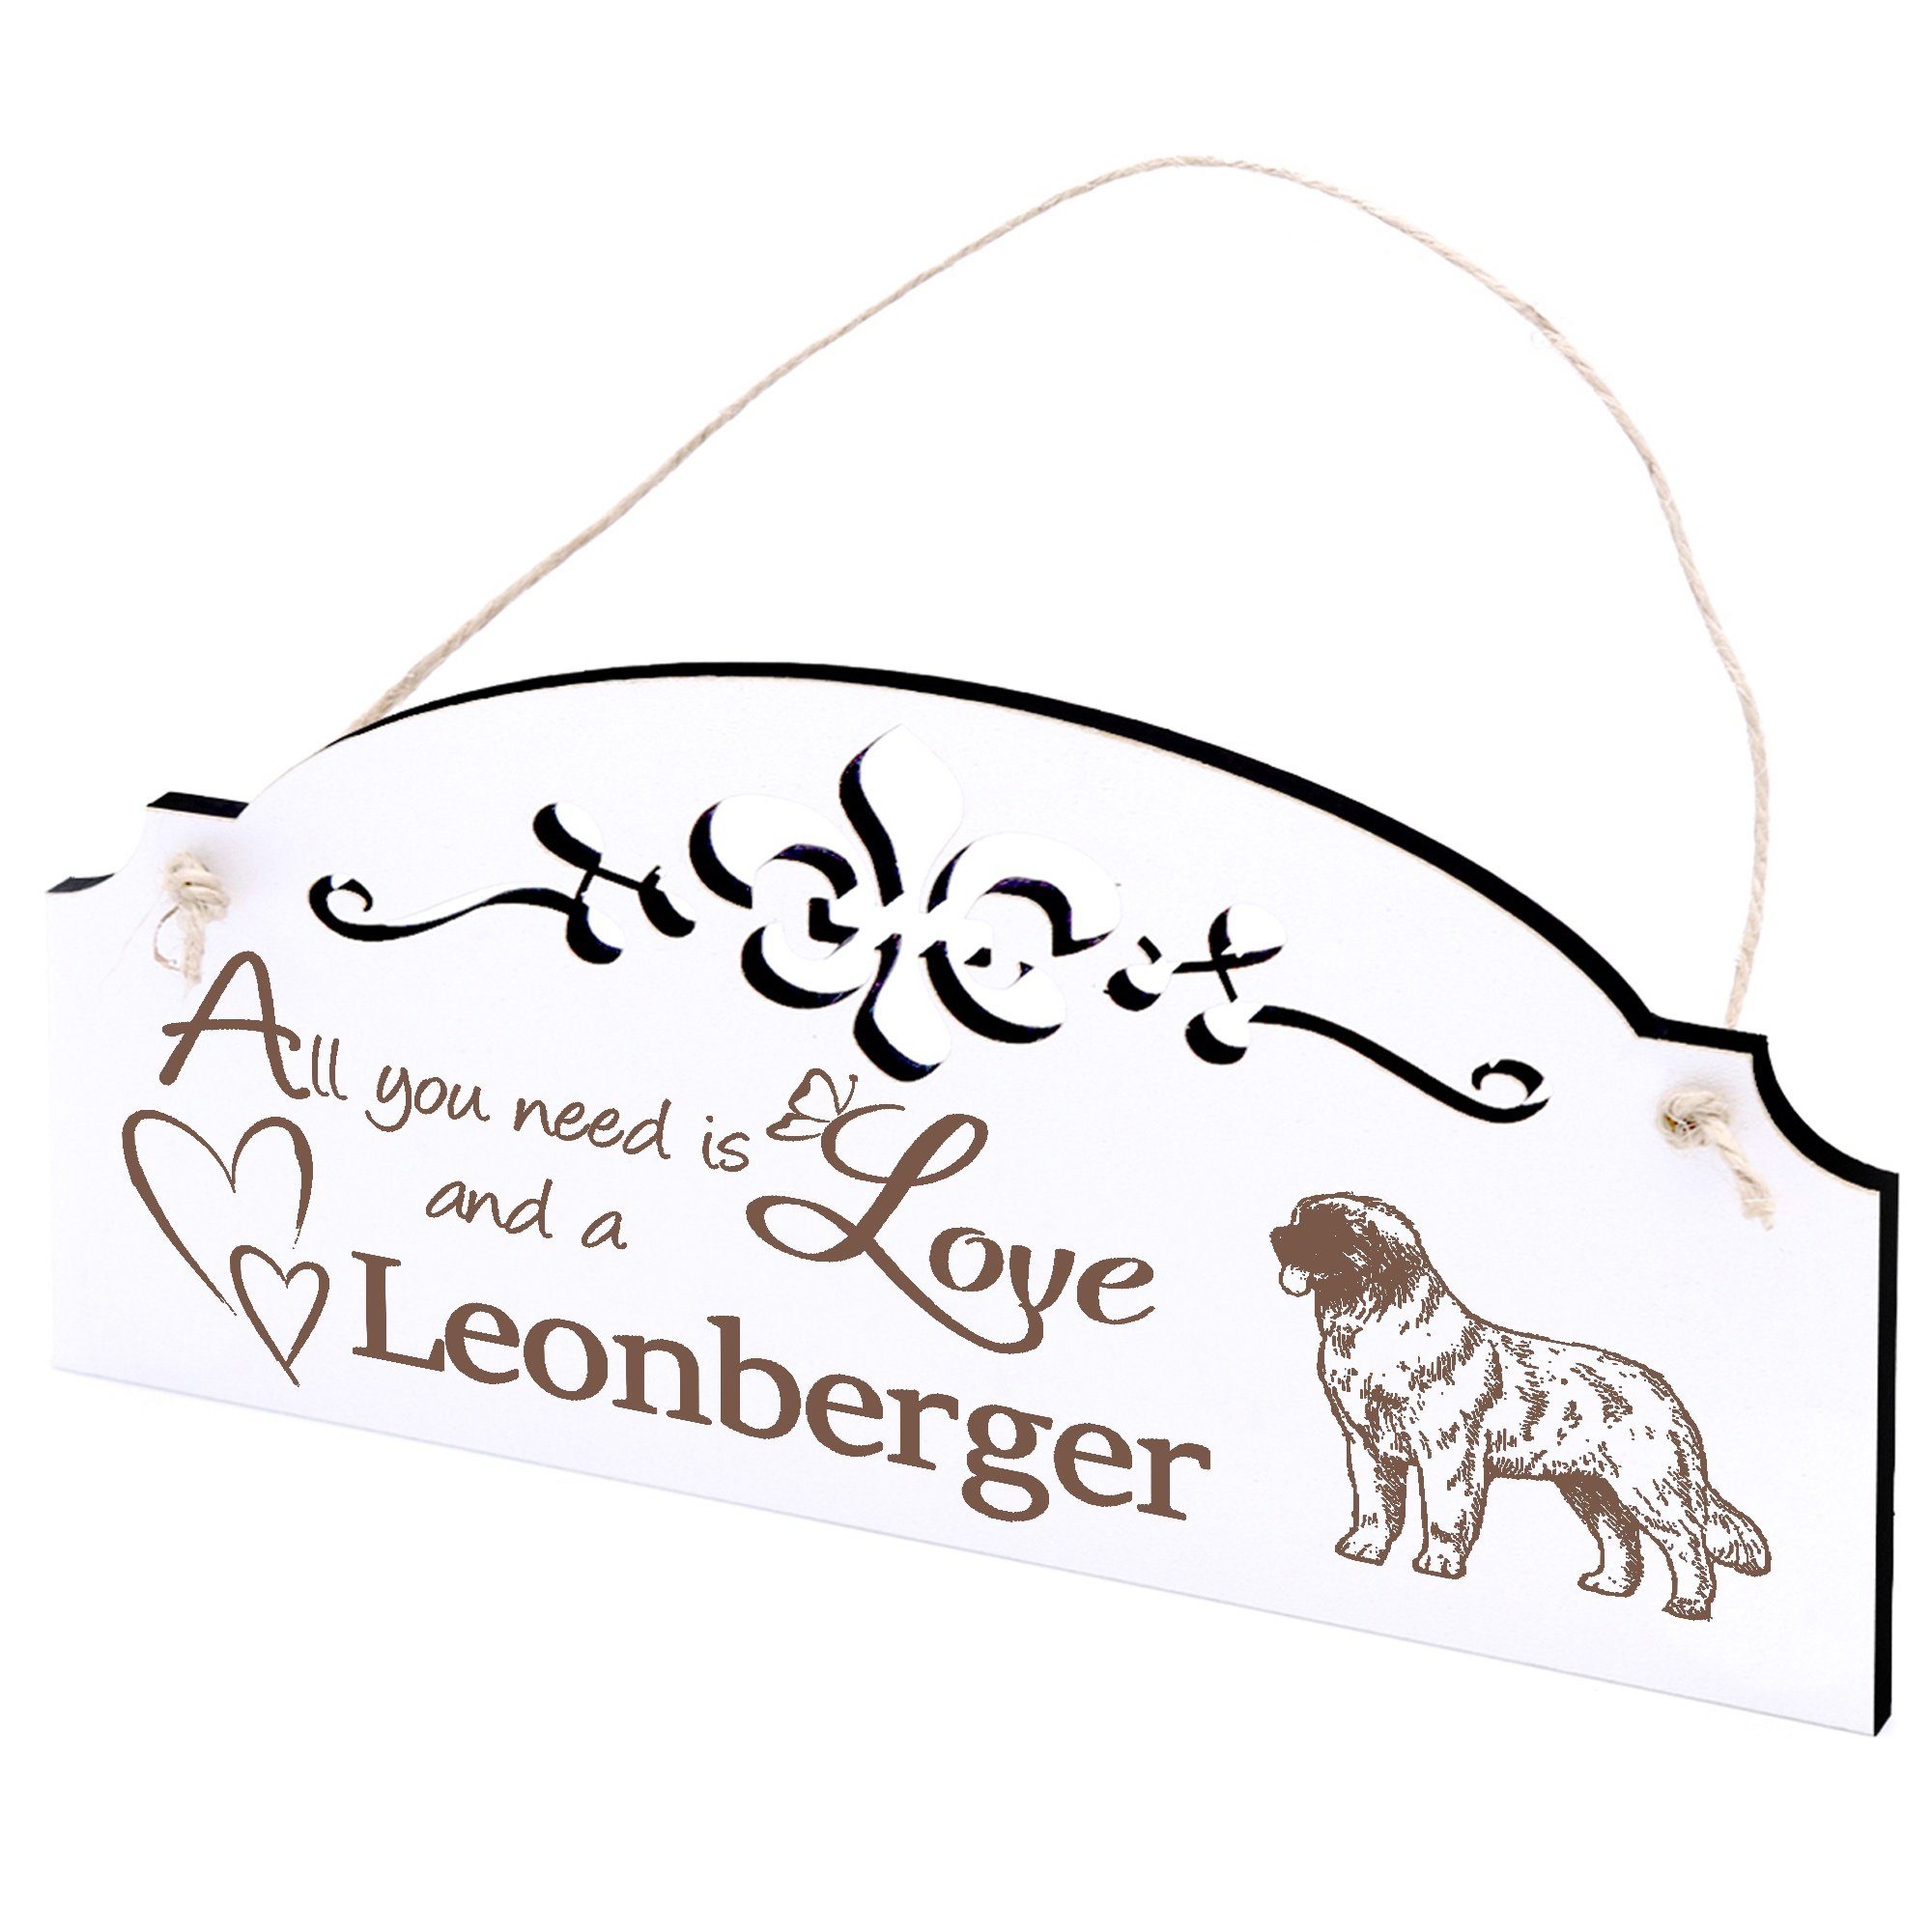 Leonberger Dekolando Deko 20x10cm need Love you is All Hängedekoration